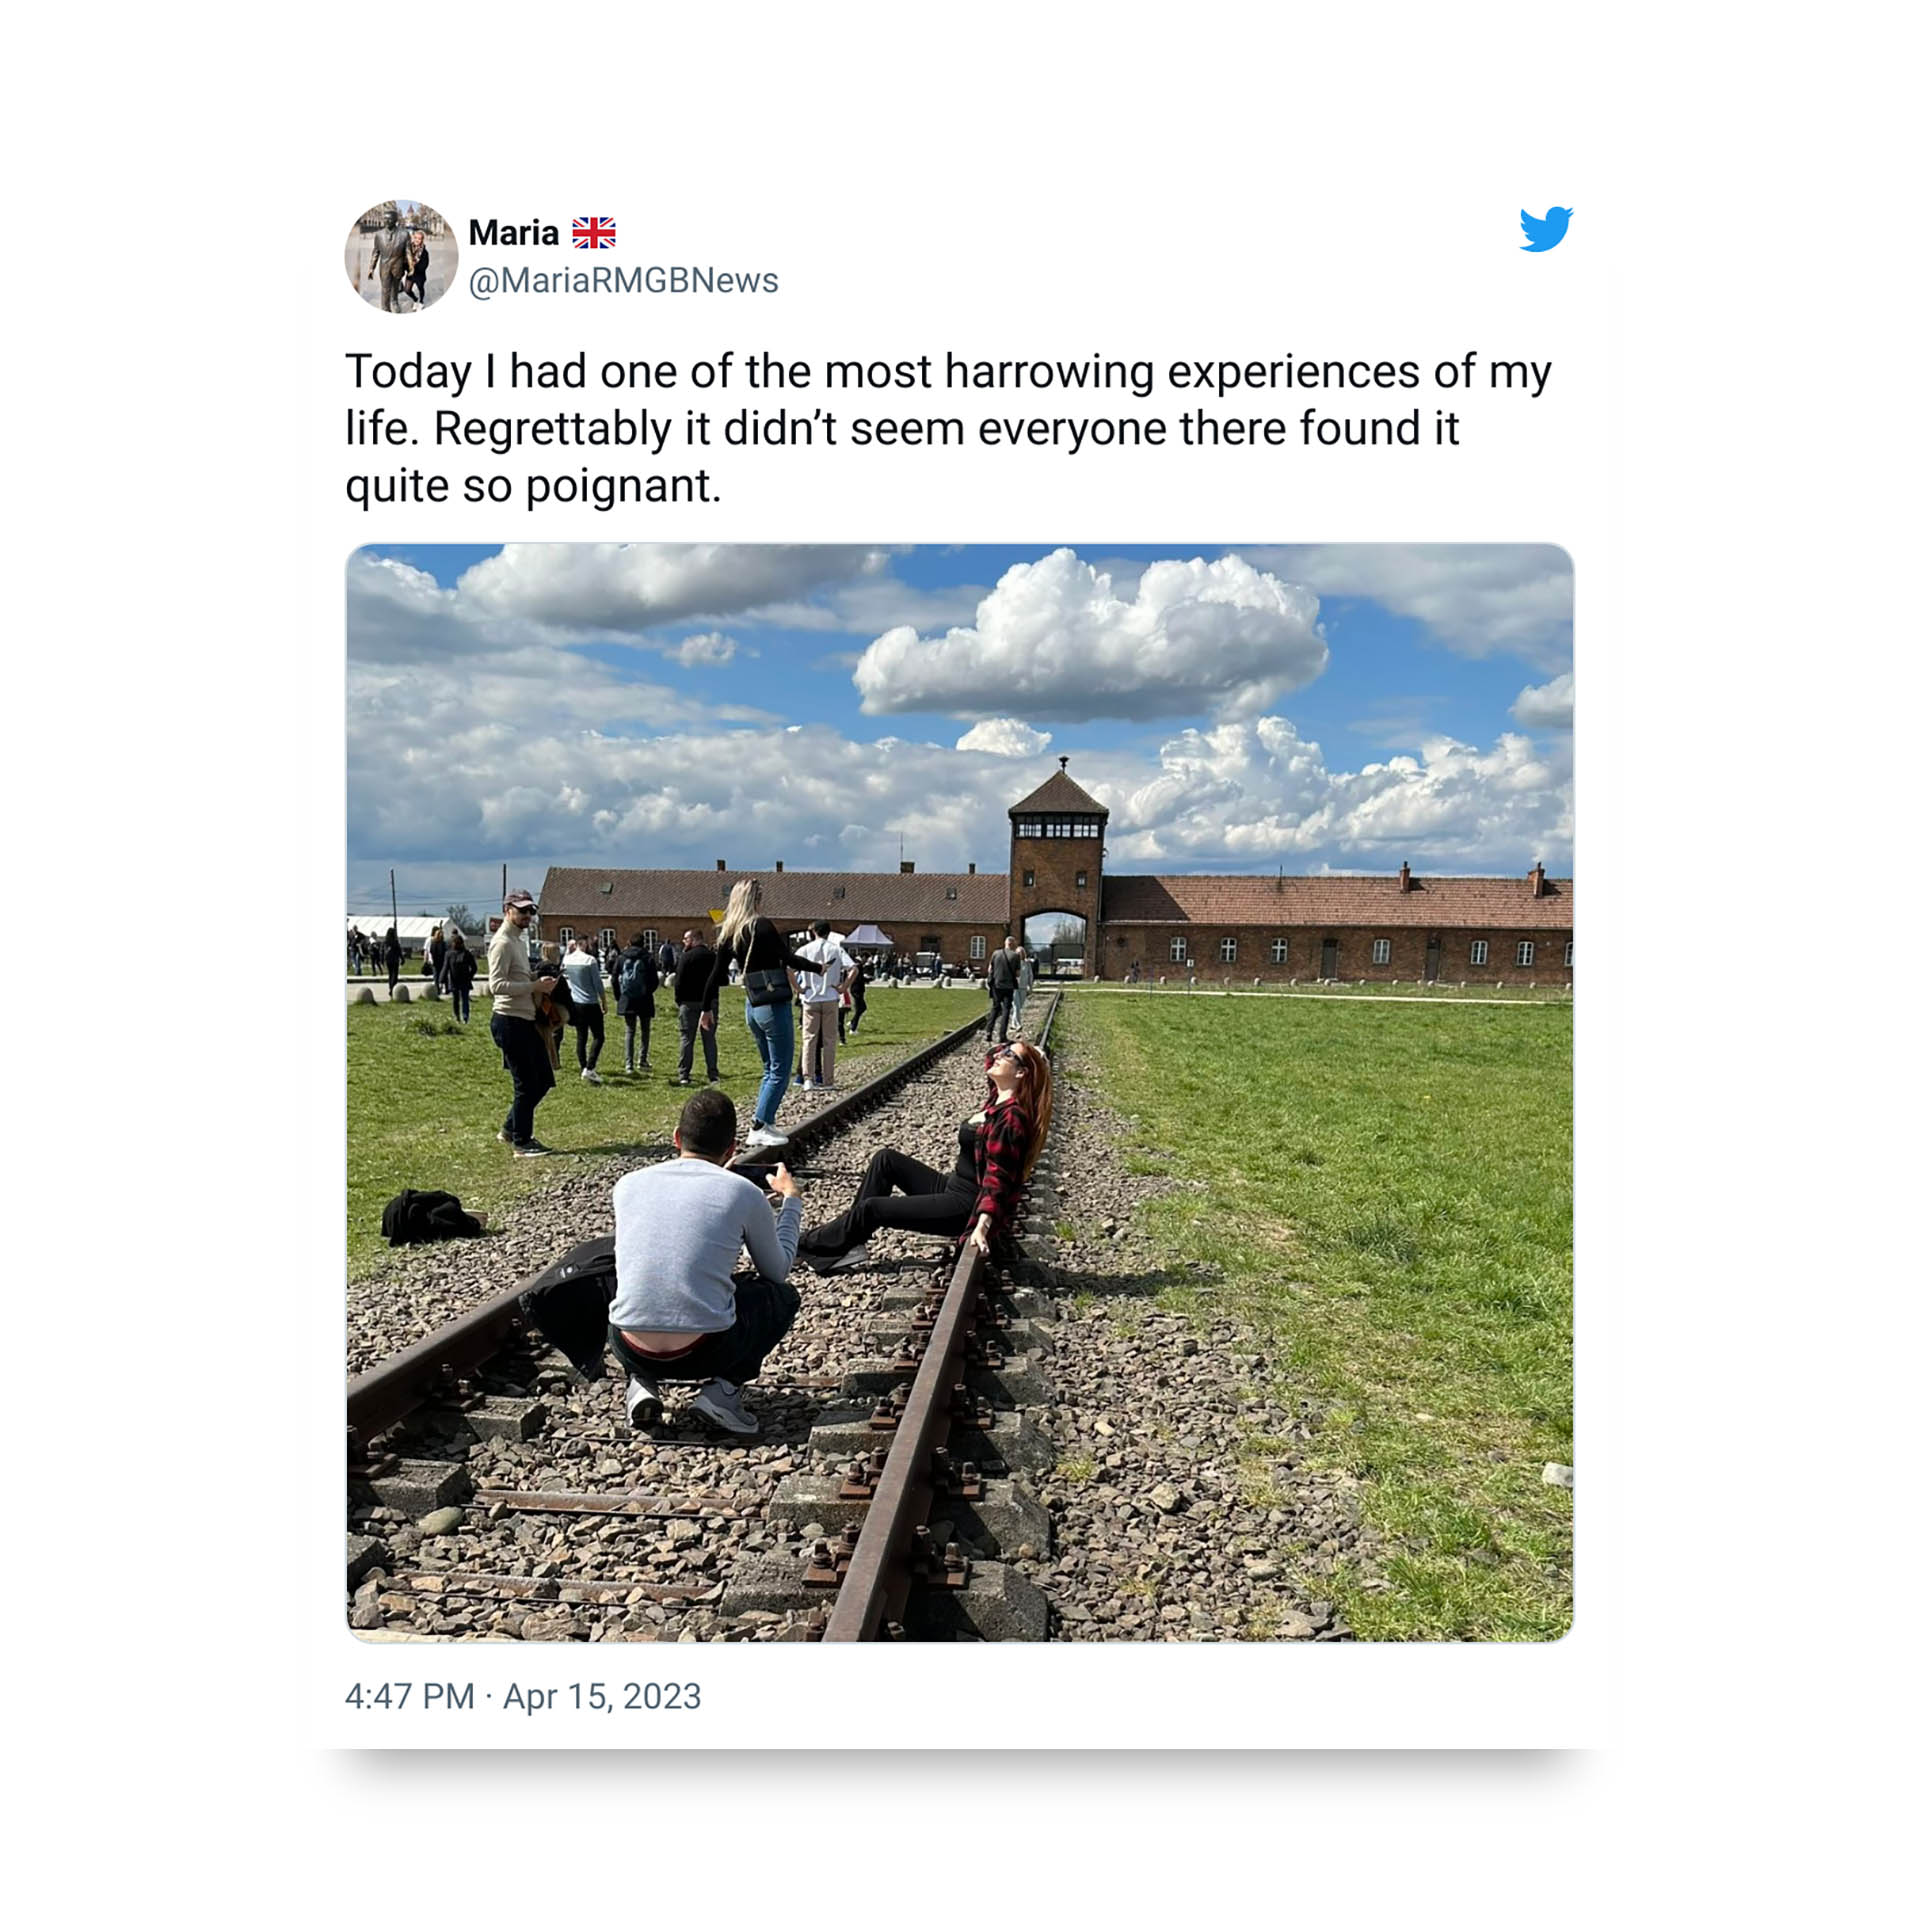 El tuit de una periodista británica que muestra a una turista posando sobre las vías que conducen a Auschwitz generó un fuerte repudio.